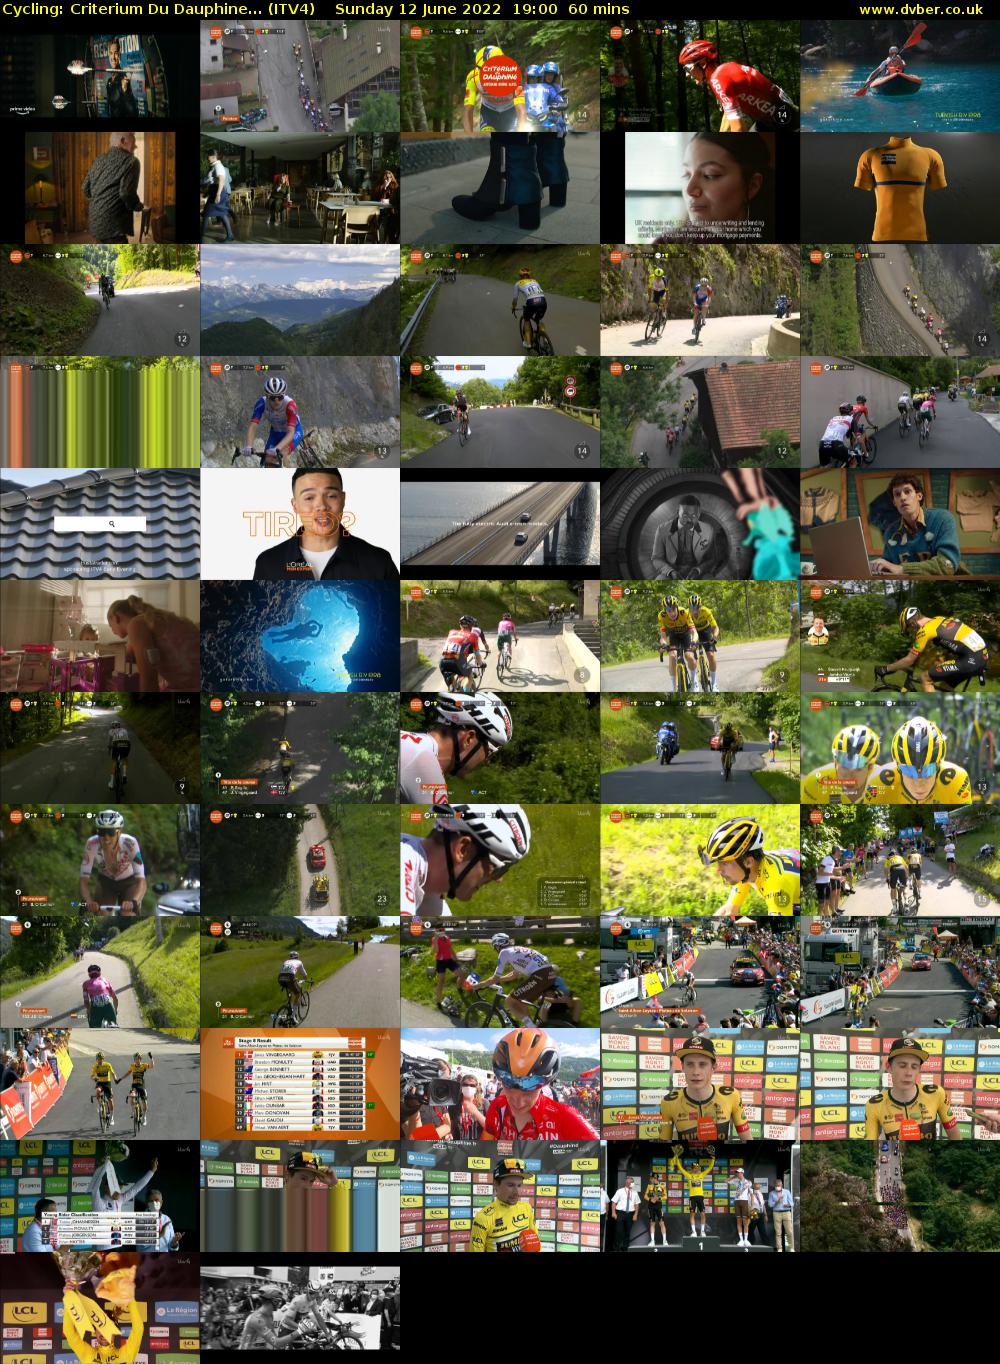 Cycling: Criterium Du Dauphine... (ITV4) Sunday 12 June 2022 19:00 - 20:00